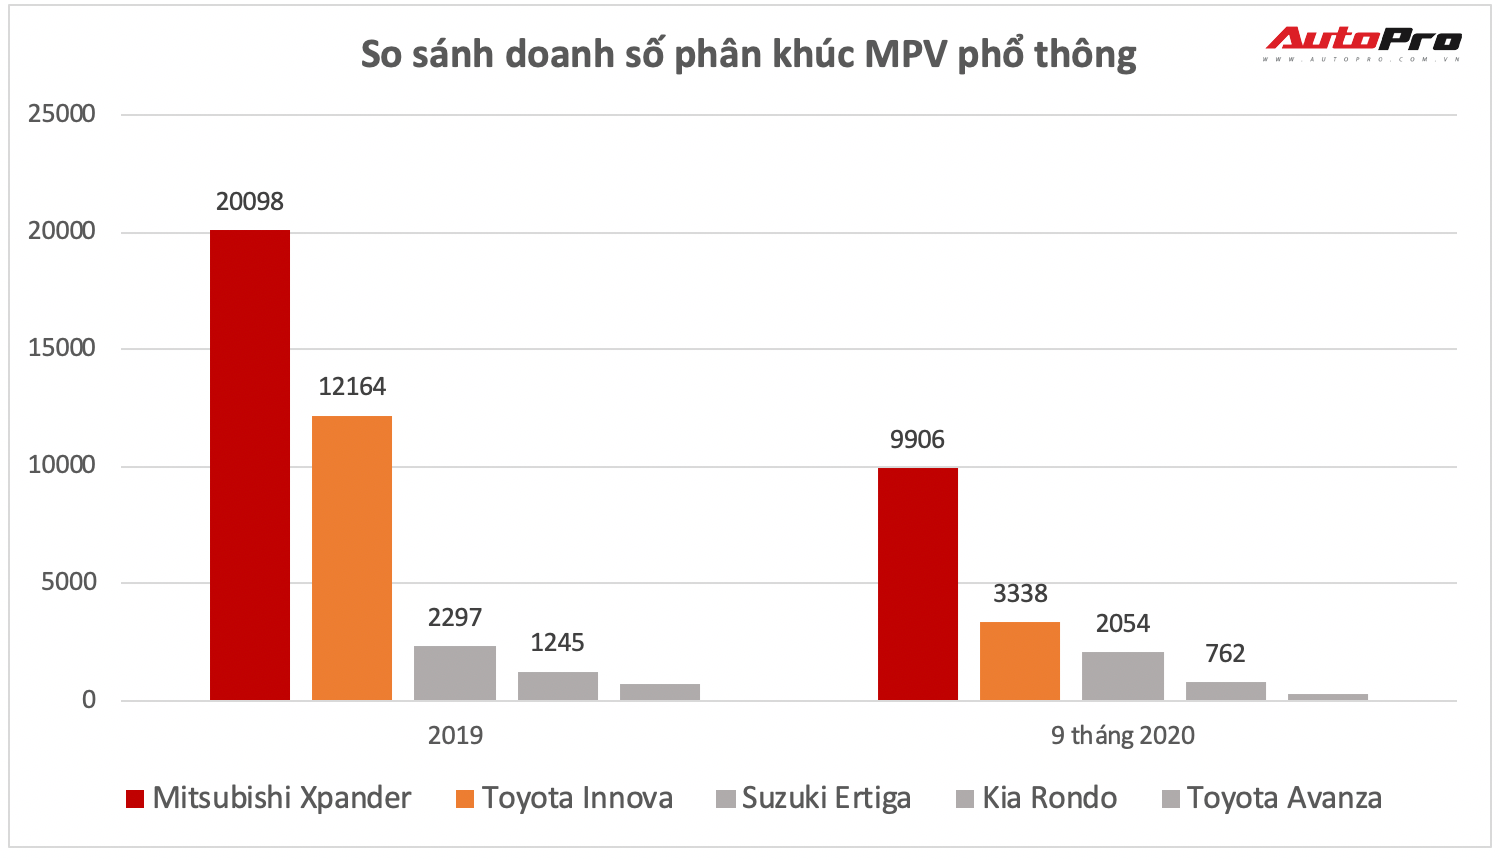 Lý do khiến Toyota Innova ‘thua sấp mặt’, không có cửa gượng dậy trước Mitsubishi Xpander ảnh 3